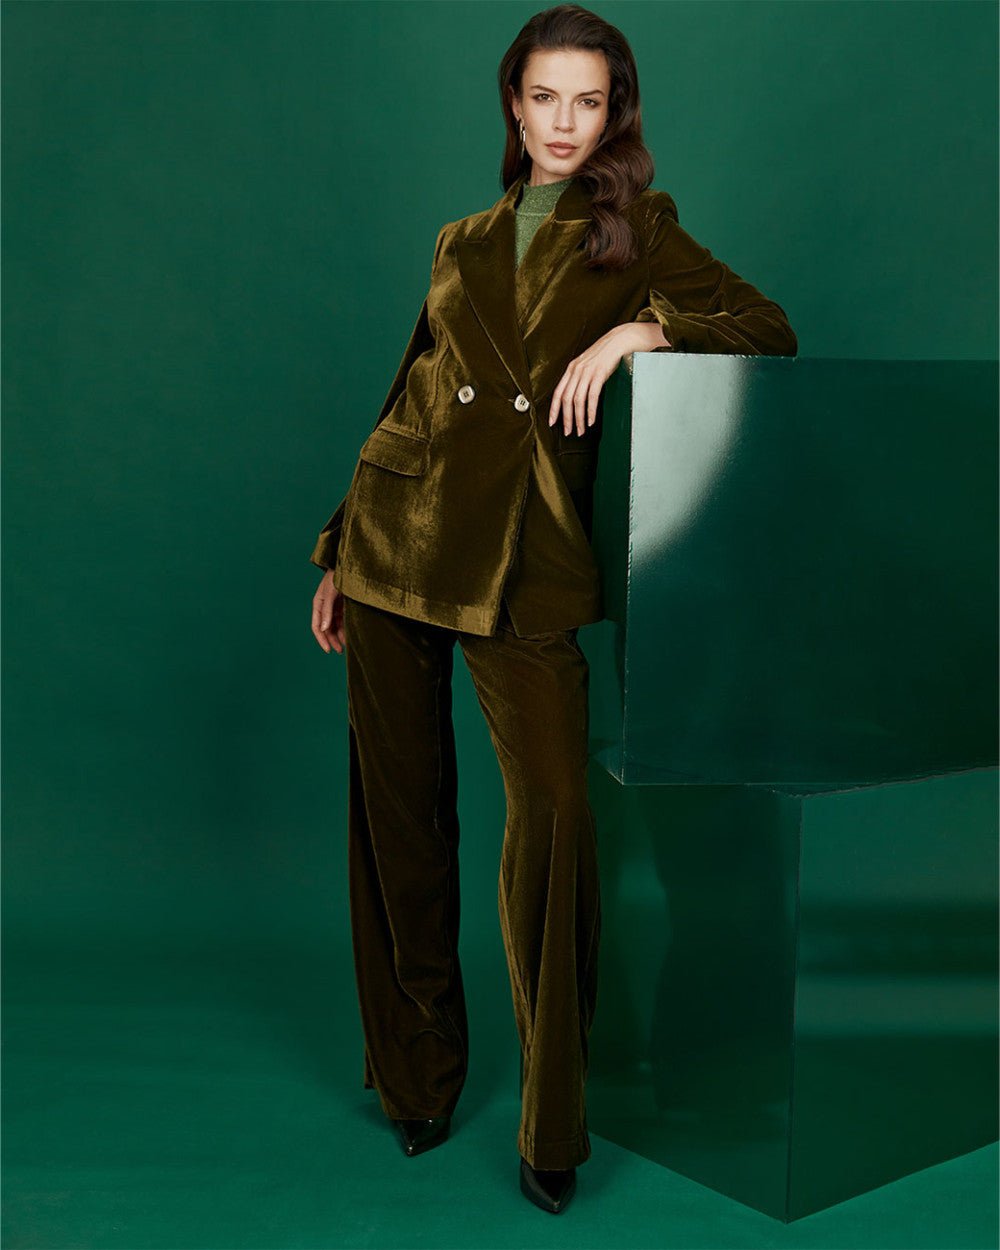 Κοστούμι σακάκι πανντελόνι βελουτέ Access Fashion - A Collection Boutique